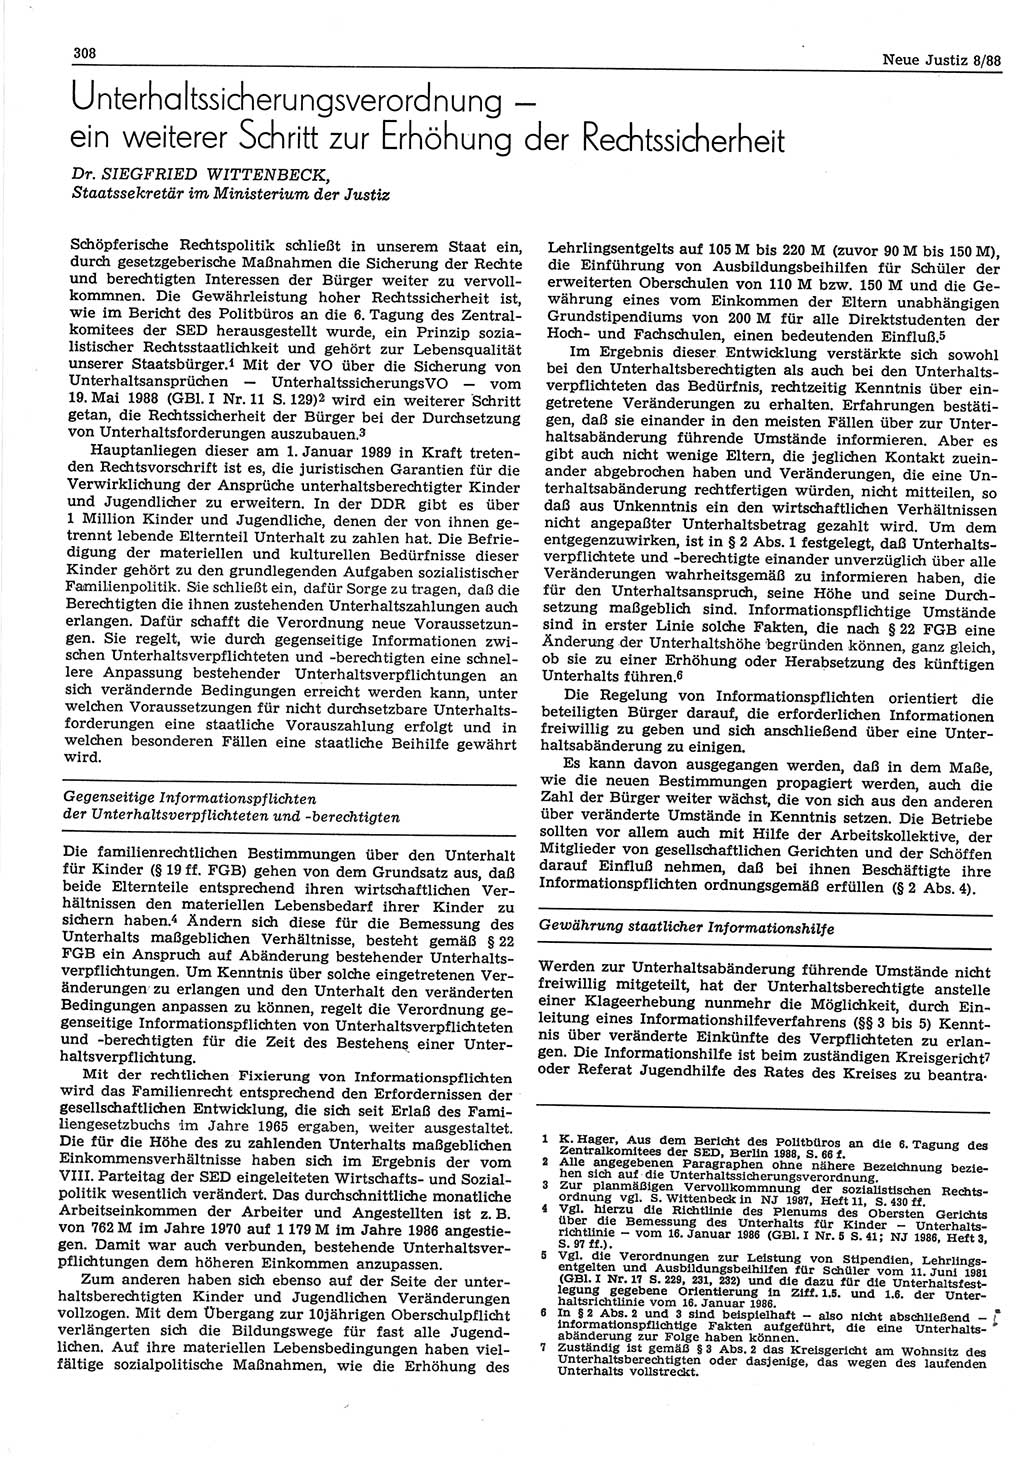 Neue Justiz (NJ), Zeitschrift für sozialistisches Recht und Gesetzlichkeit [Deutsche Demokratische Republik (DDR)], 42. Jahrgang 1988, Seite 308 (NJ DDR 1988, S. 308)